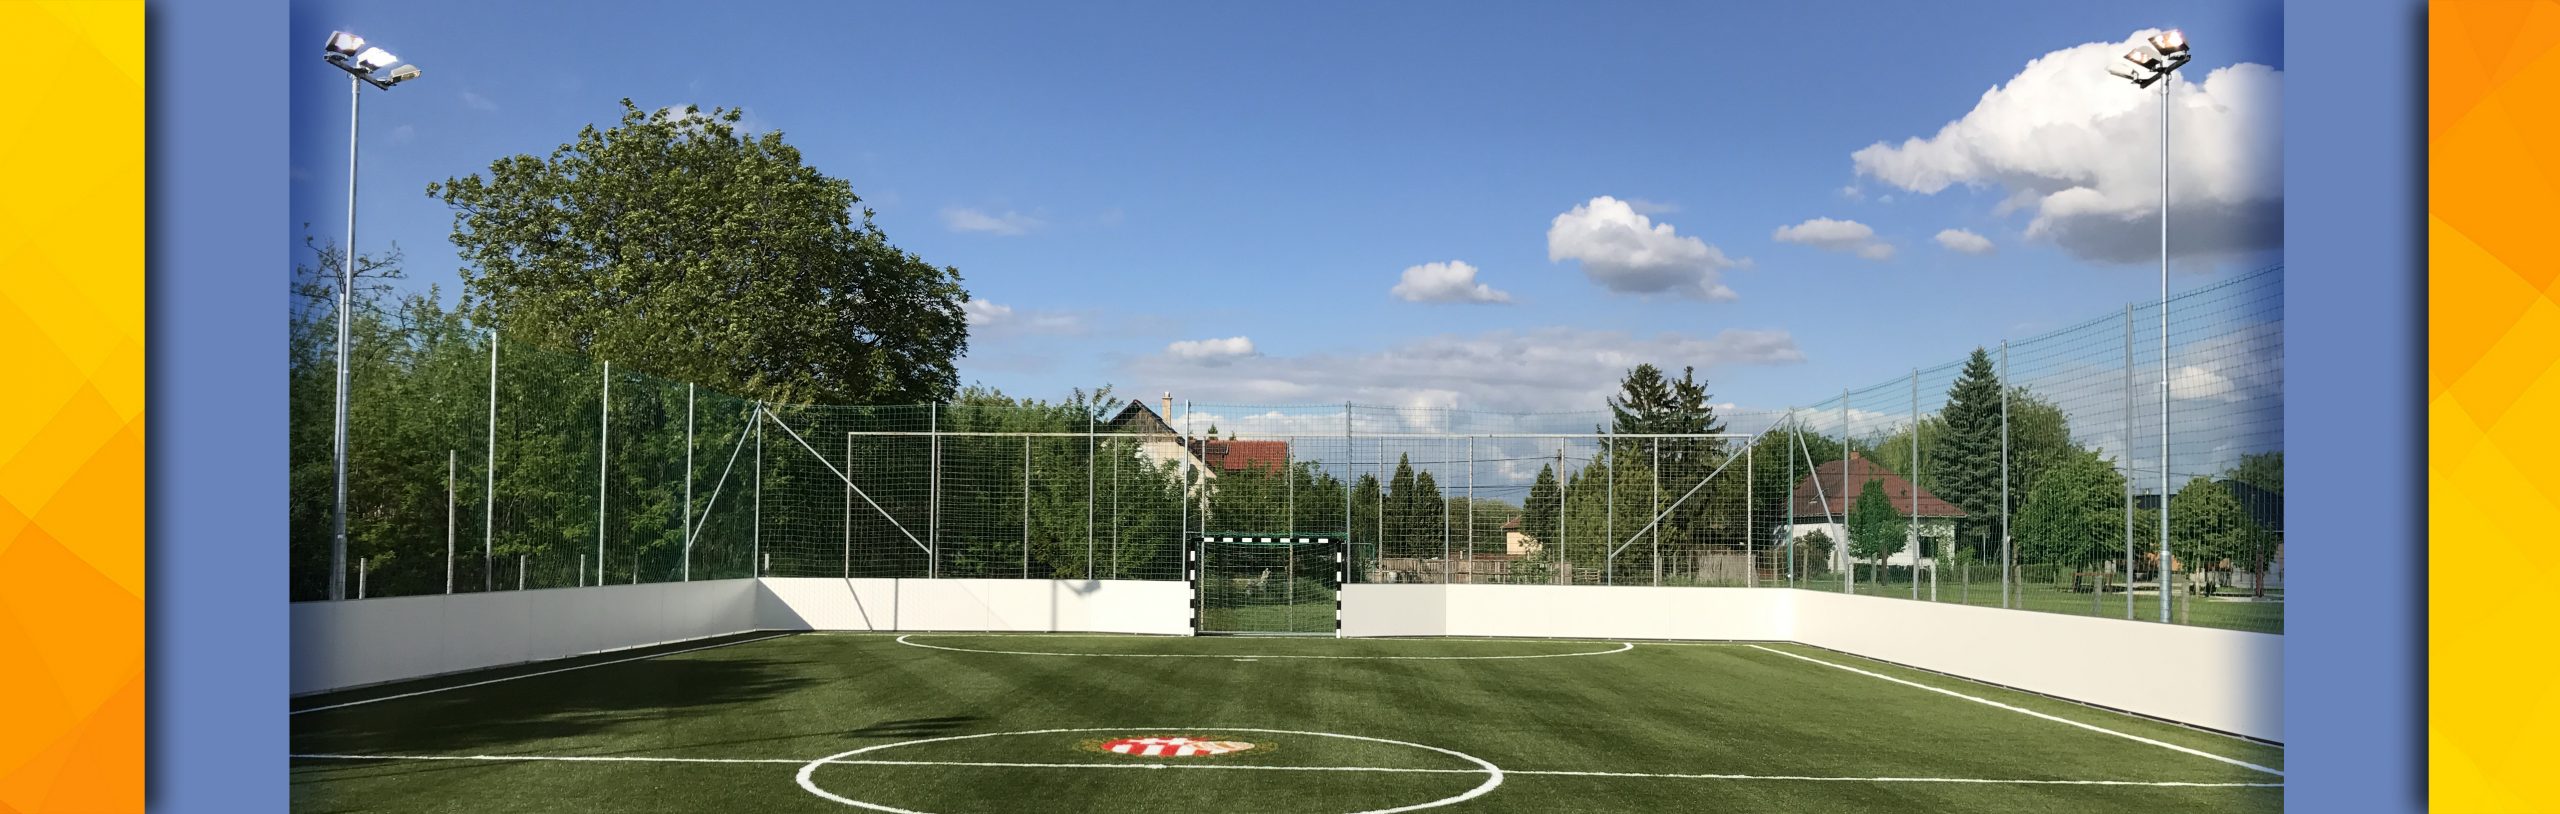 FC Tiszaújváros Edzőpálya1 – 120 lux LED